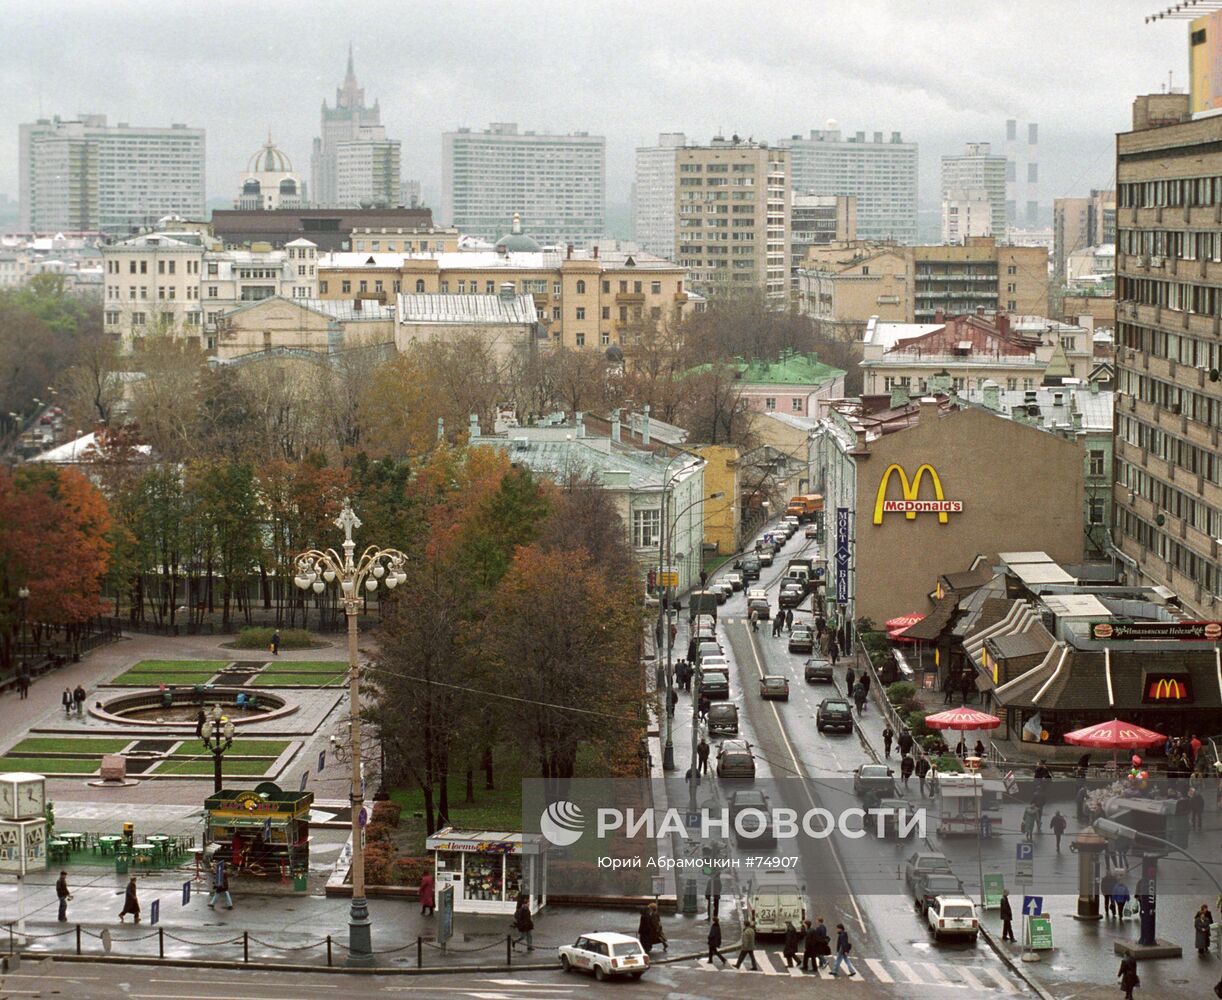 Тверской бульвар в Москве